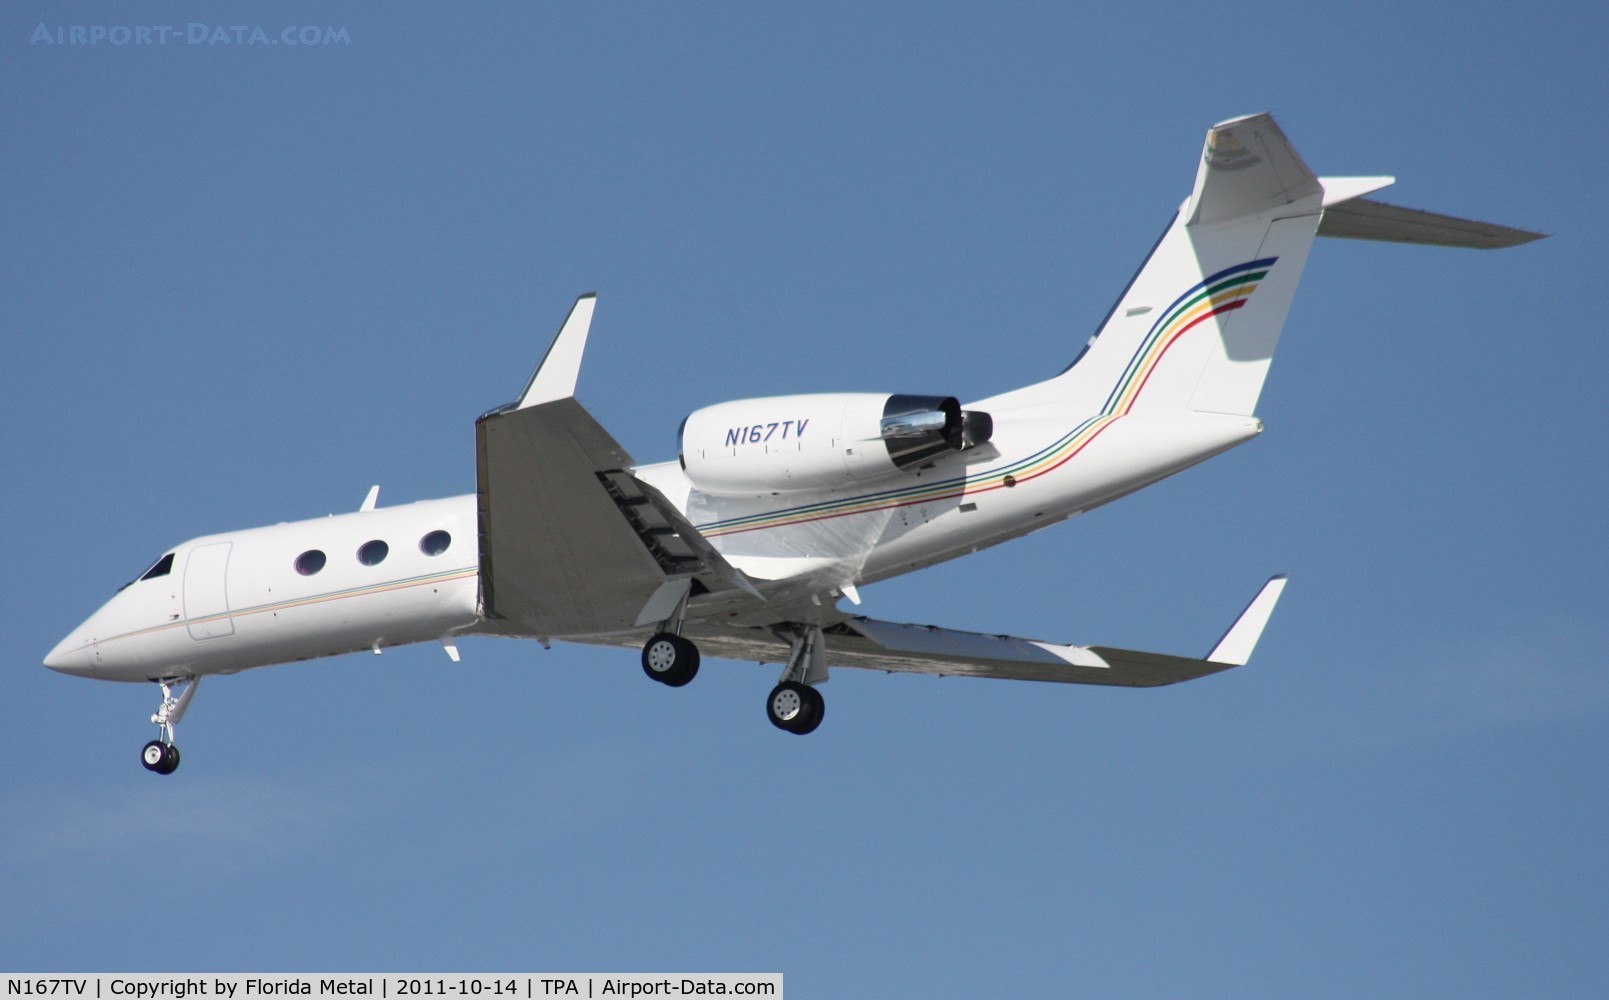 N167TV, 2004 Gulfstream Aerospace G-IV C/N 1533, Gulfstream 400